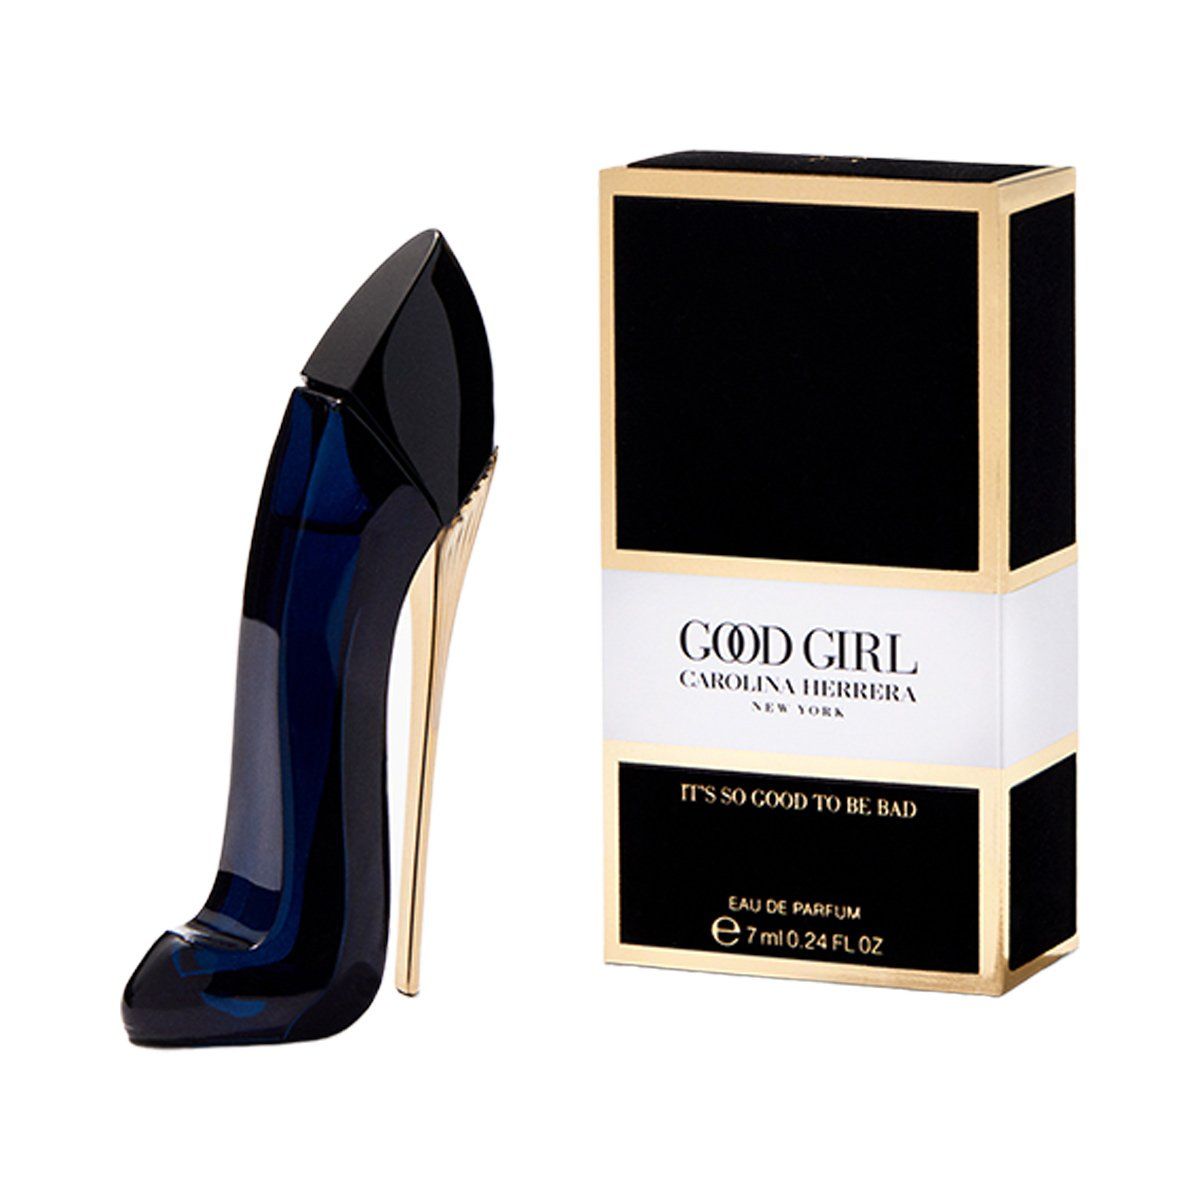  Carolina Herrera Good Girl Eau de Parfum Mini Size 